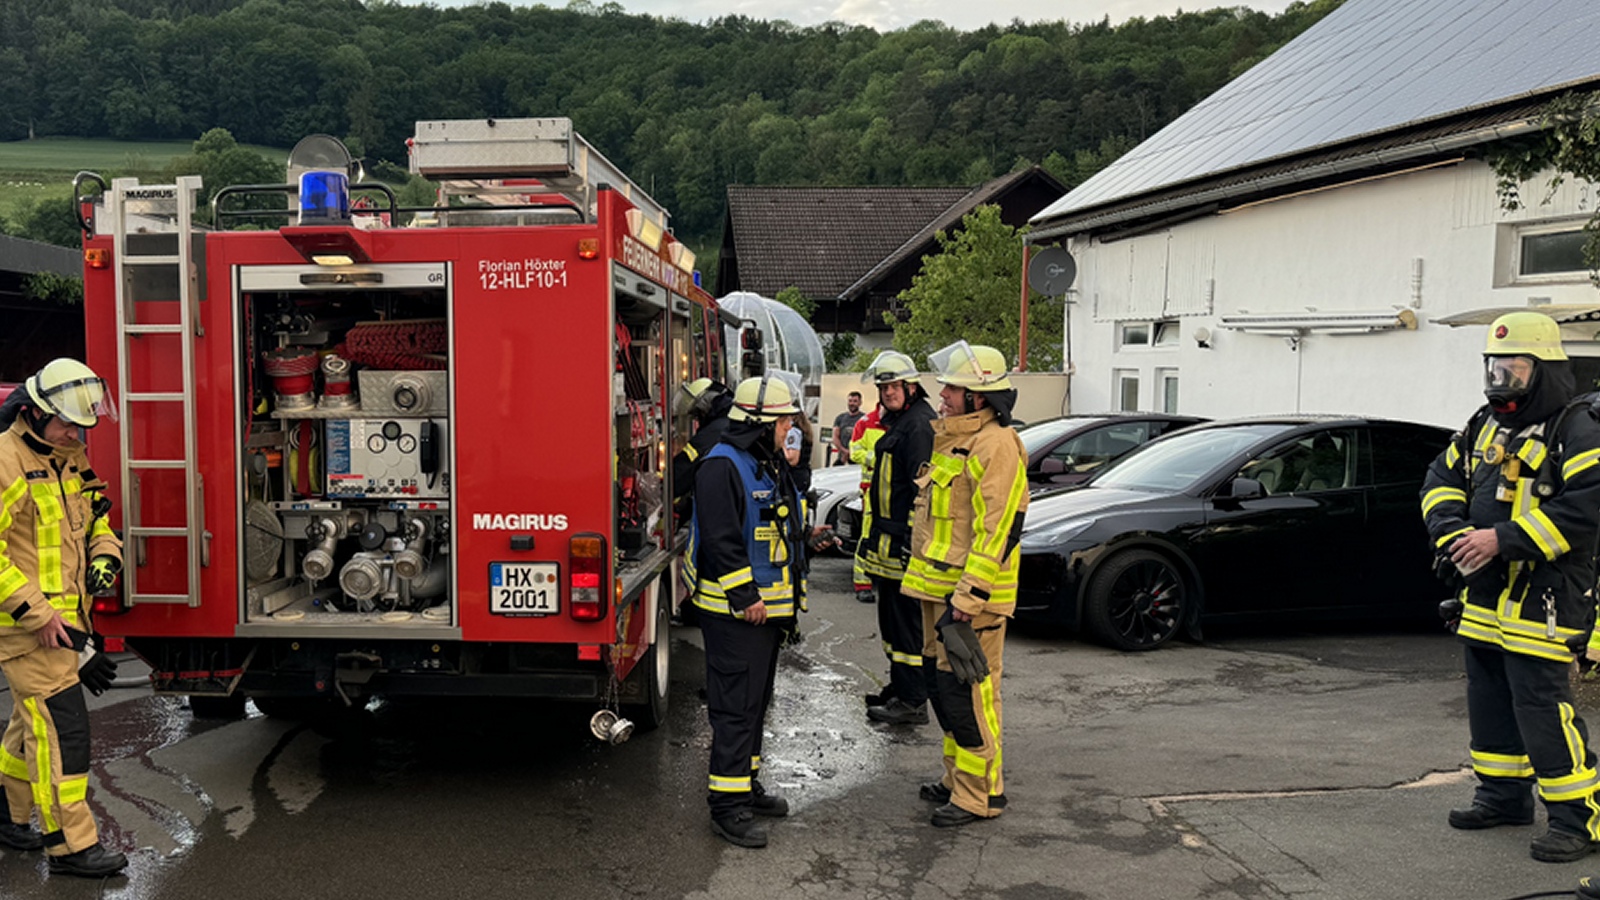 Küchenbrand in Hotel in Ovenhausen: Angestellter löscht Flammen